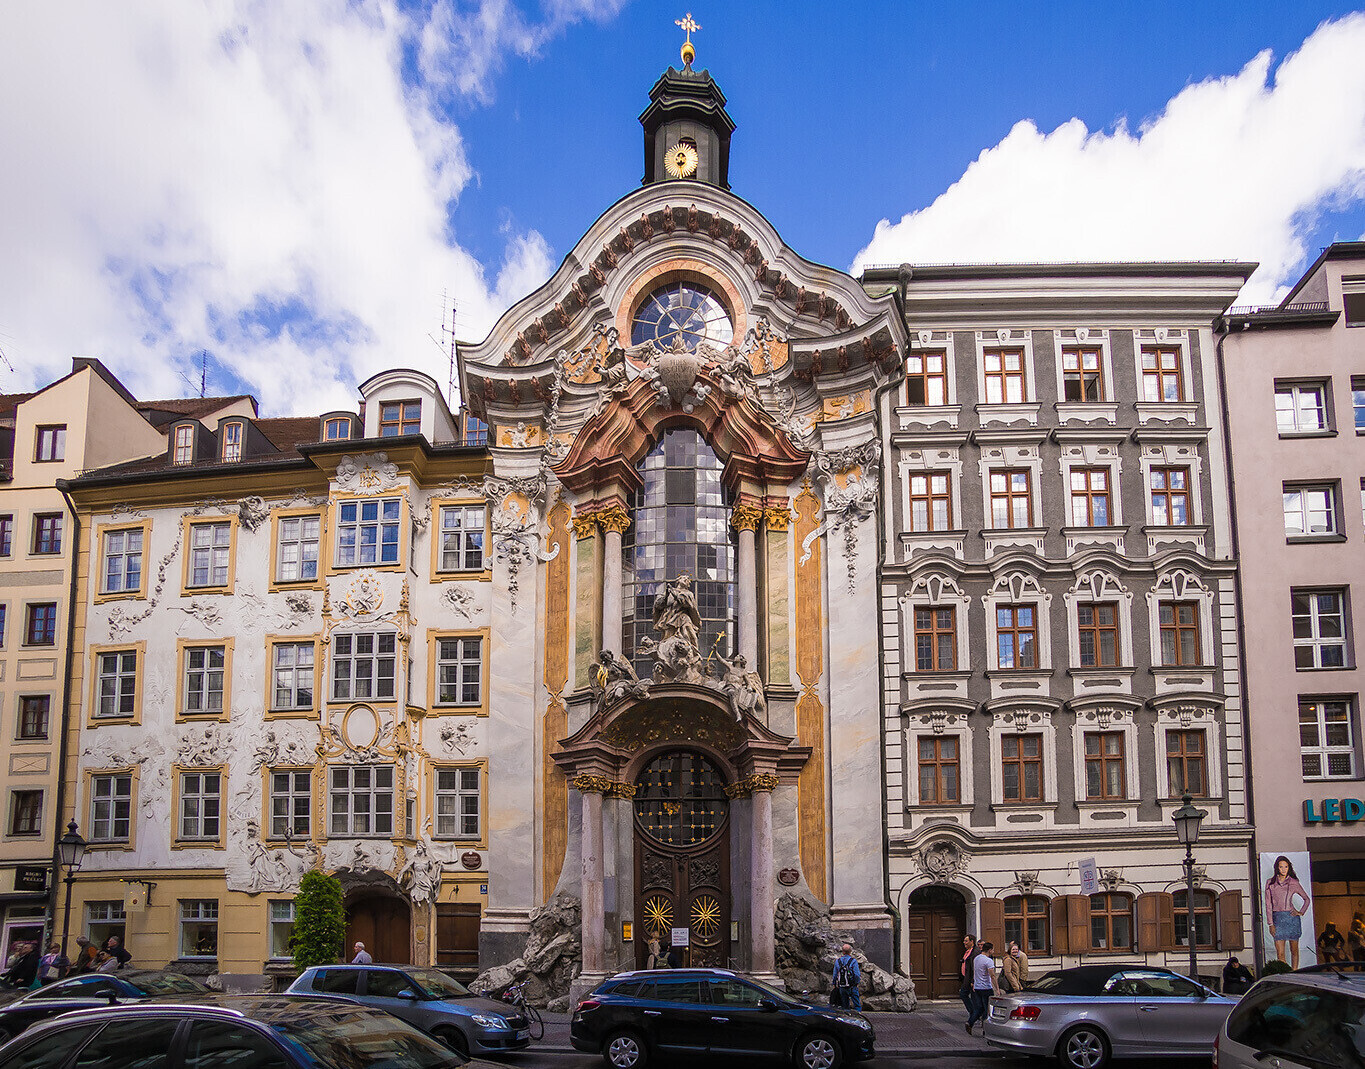 Asamkirche) - одна из самых красивых церквей Мюнхена, по отзывам многих пут...